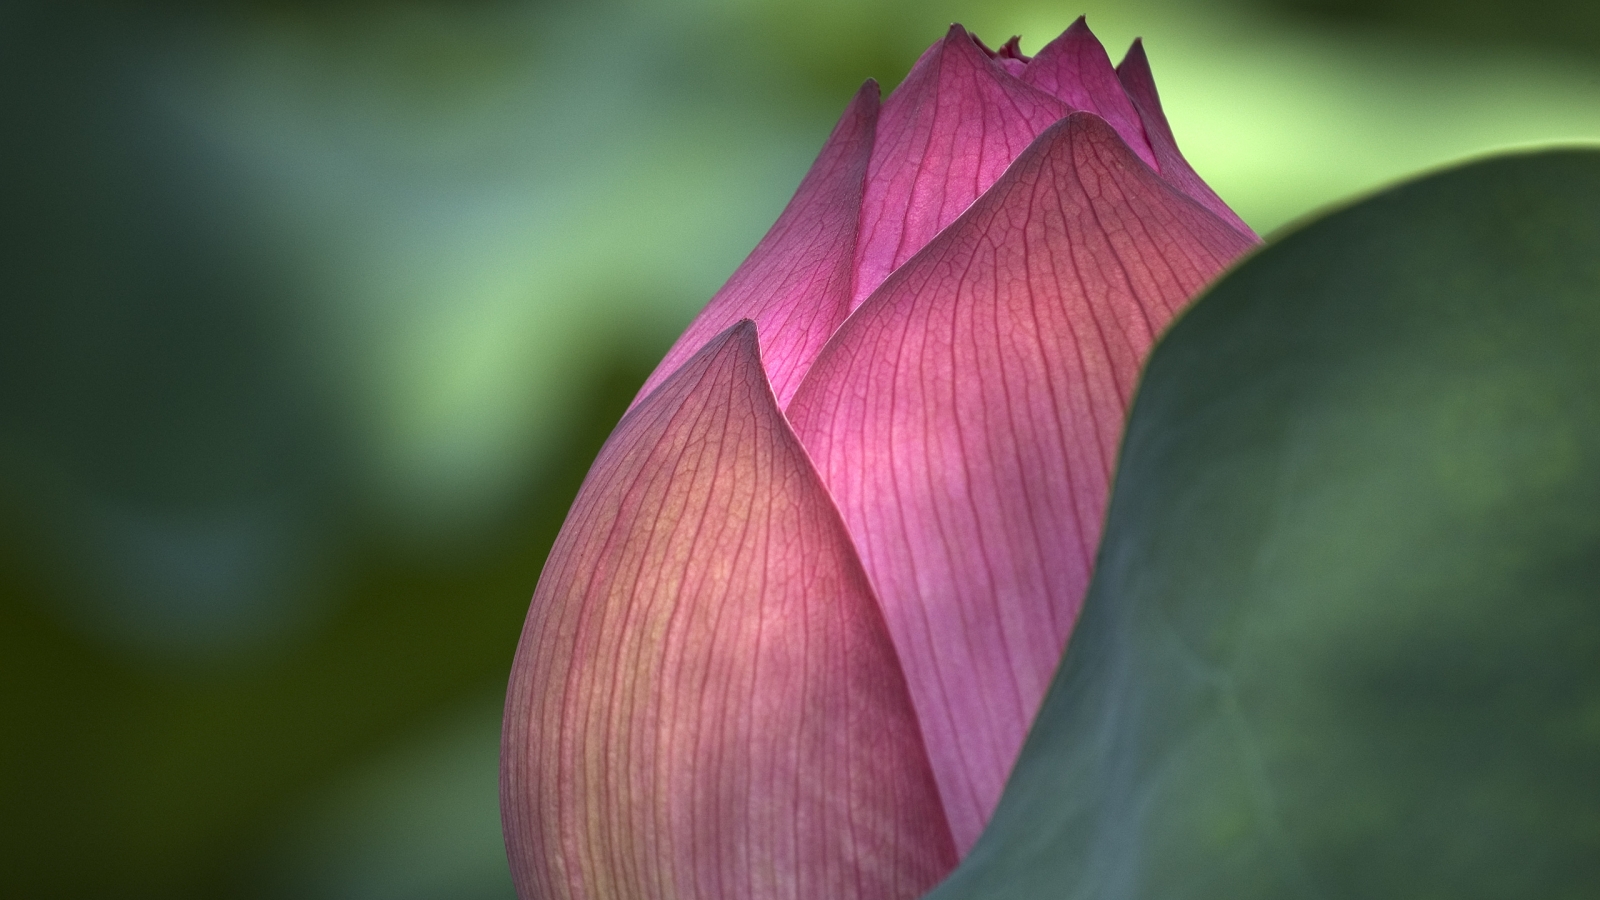 Lotus Flower for 1600 x 900 HDTV resolution